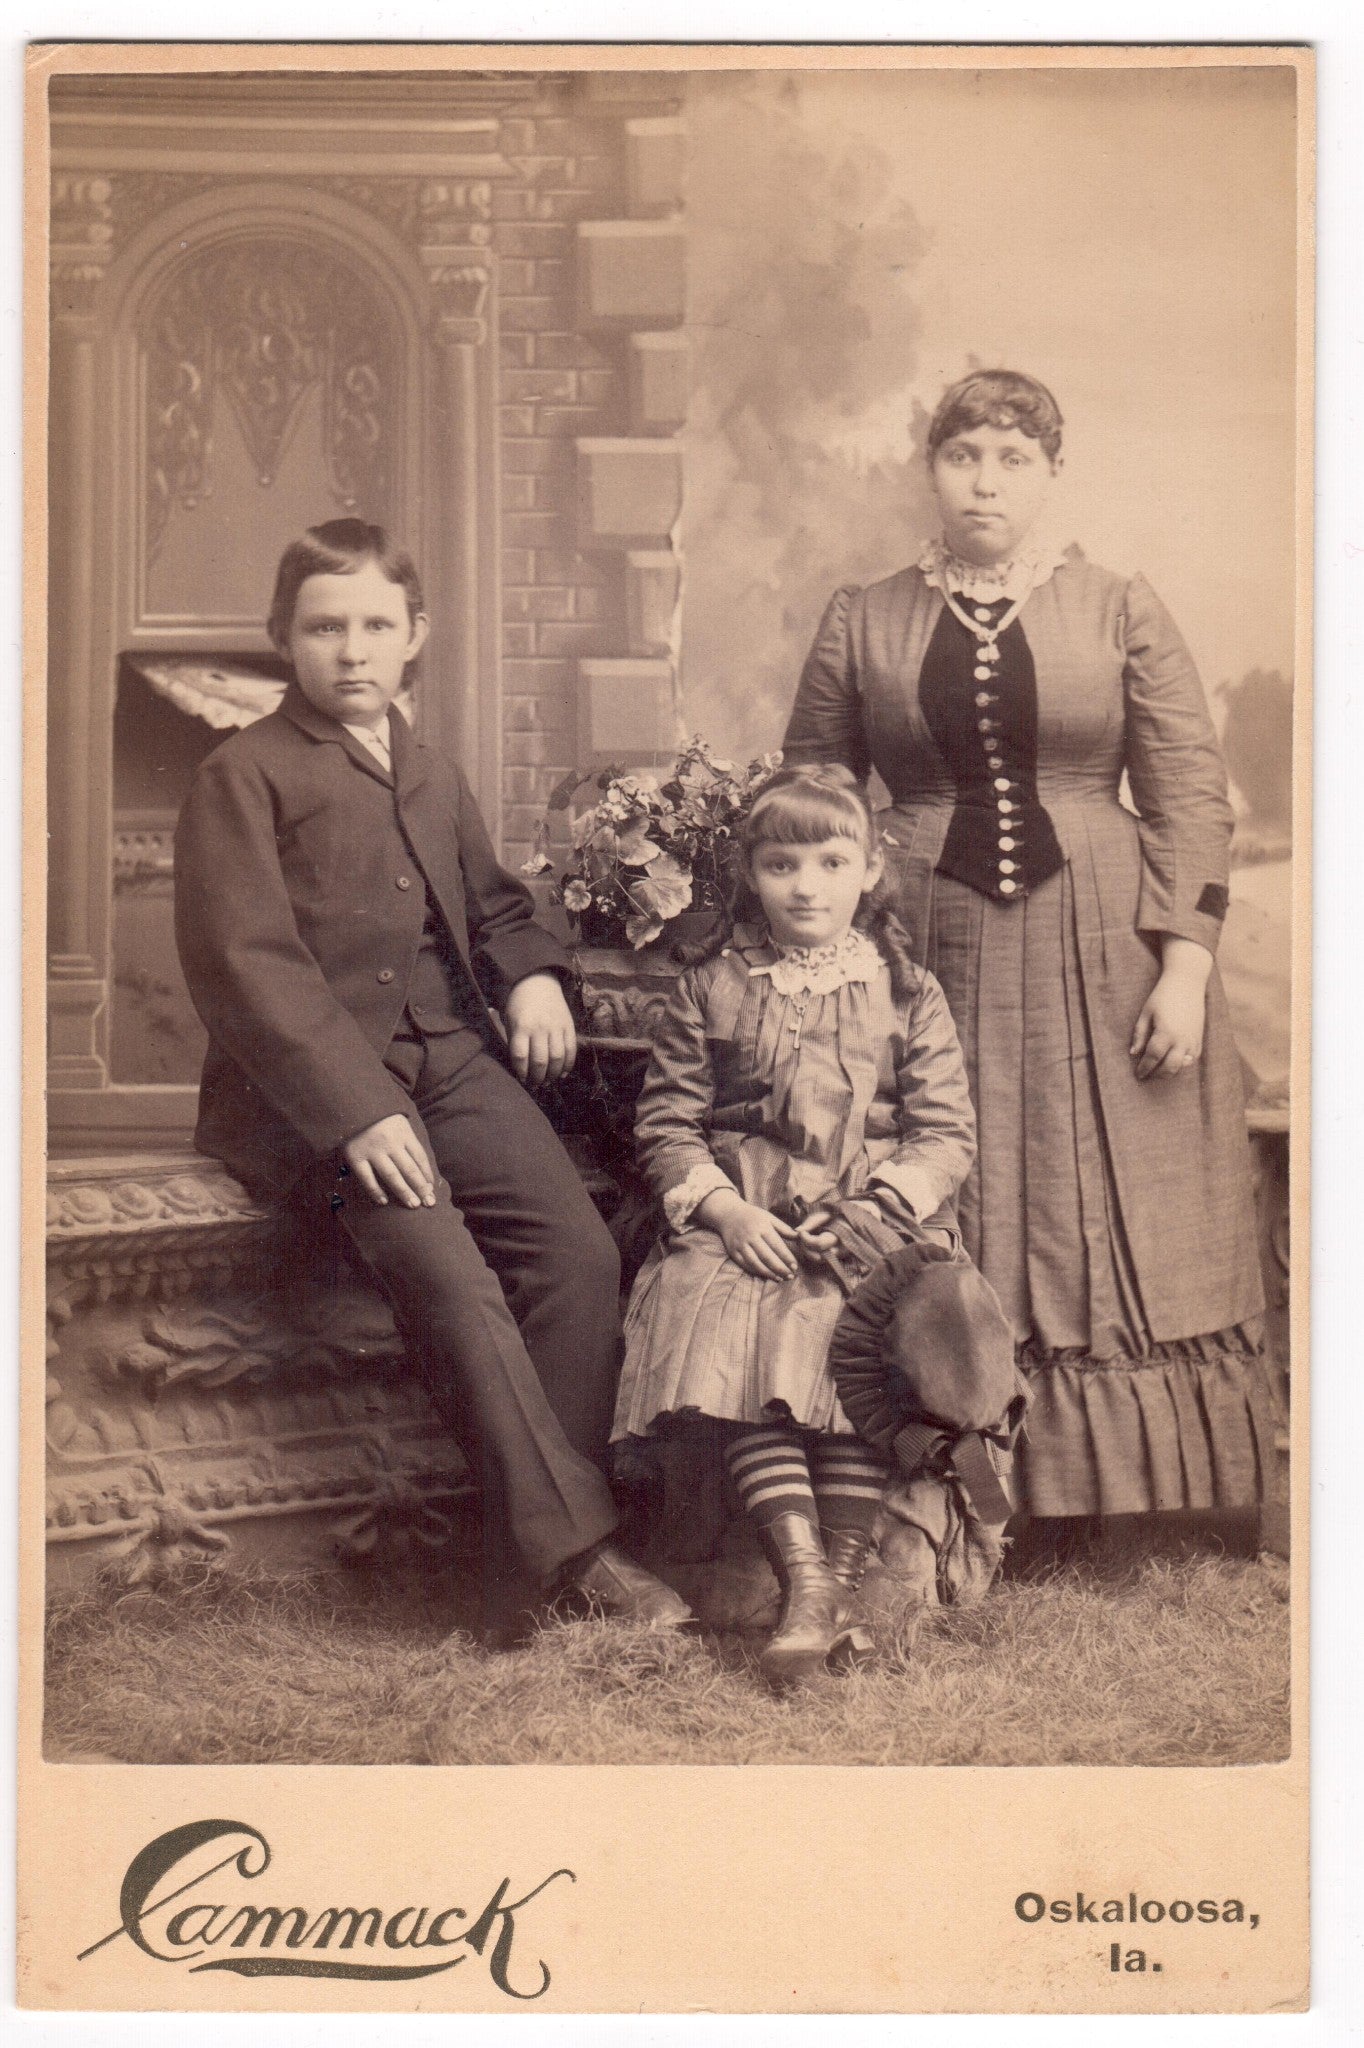 Photograph Antique Photo Cabinet Card Family Portrait Oskaloosa Iowa - Dahlströms Fine Art